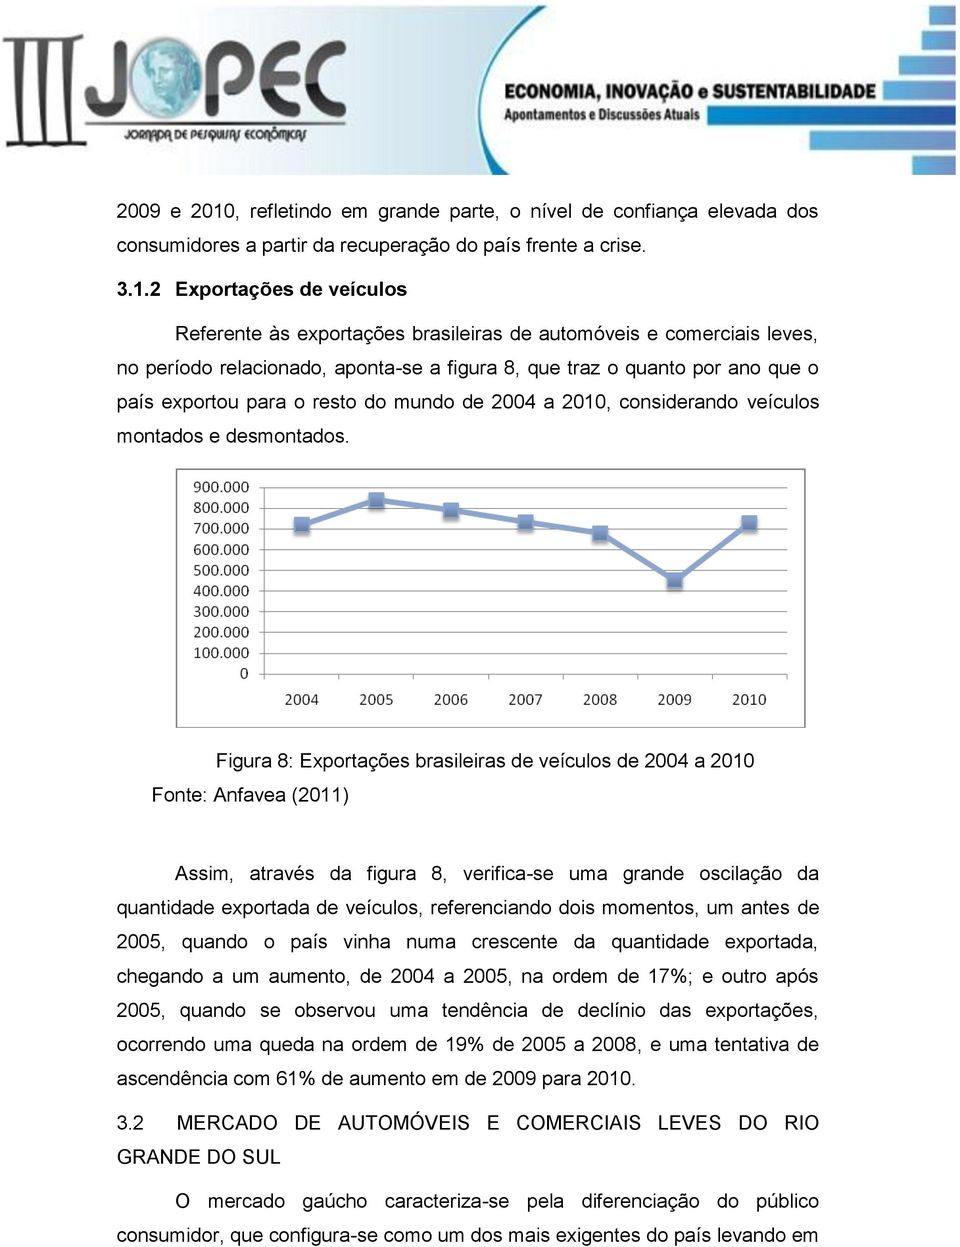 2 Exportações de veículos Referente às exportações brasileiras de automóveis e comerciais leves, no período relacionado, aponta-se a figura 8, que traz o quanto por ano que o país exportou para o